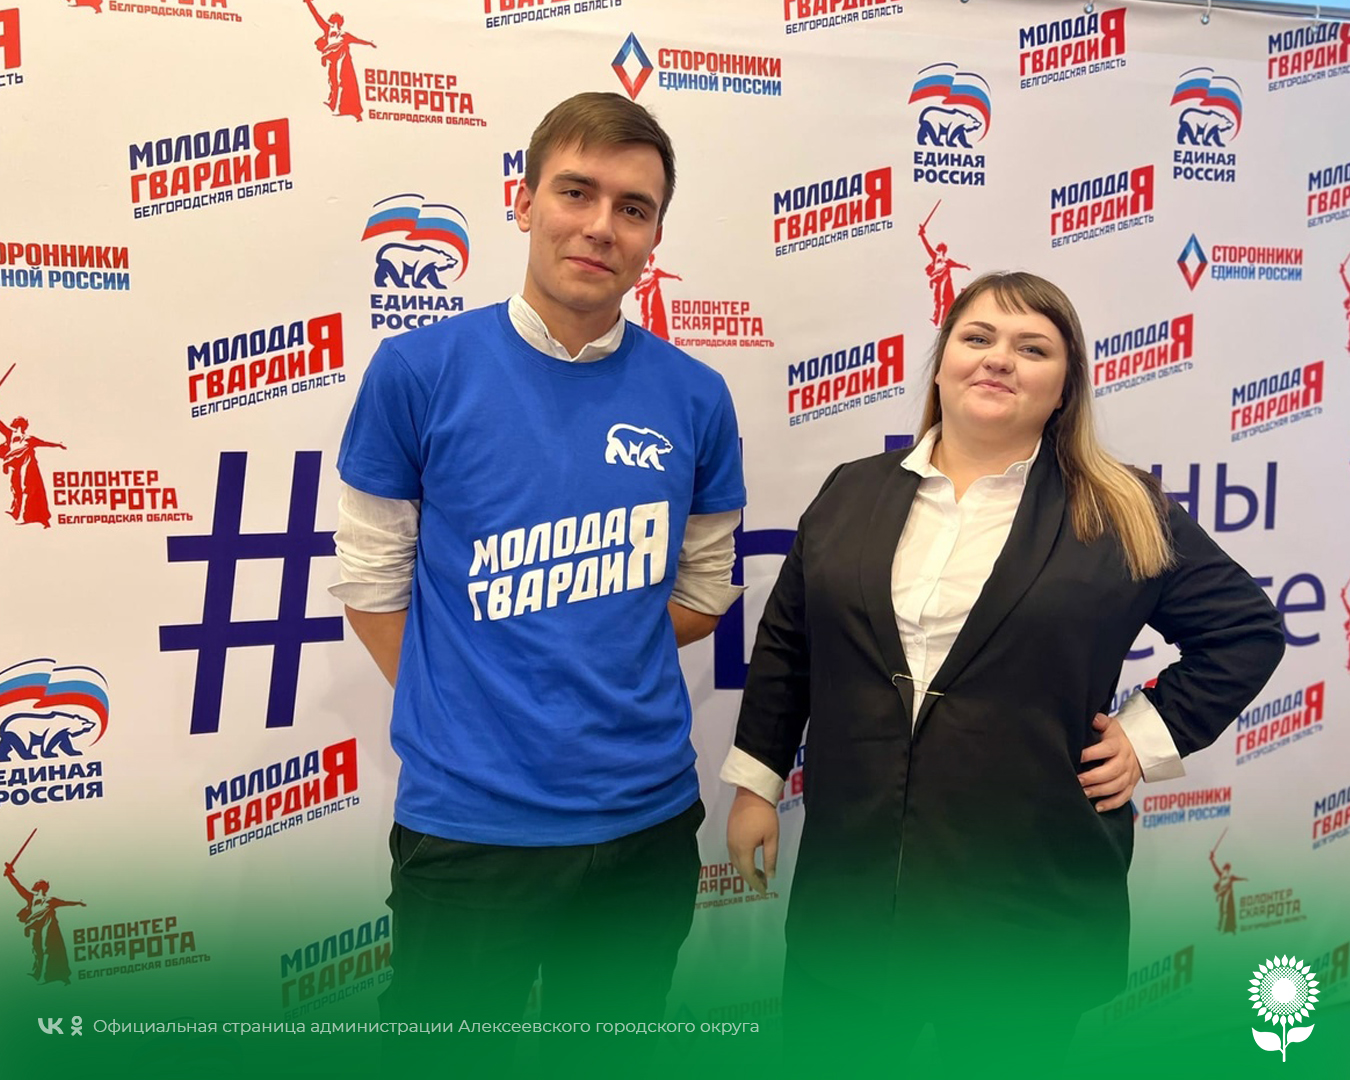 Наши активисты побывали на конференции регионального отделения «Молодой Гвардии Единой России»